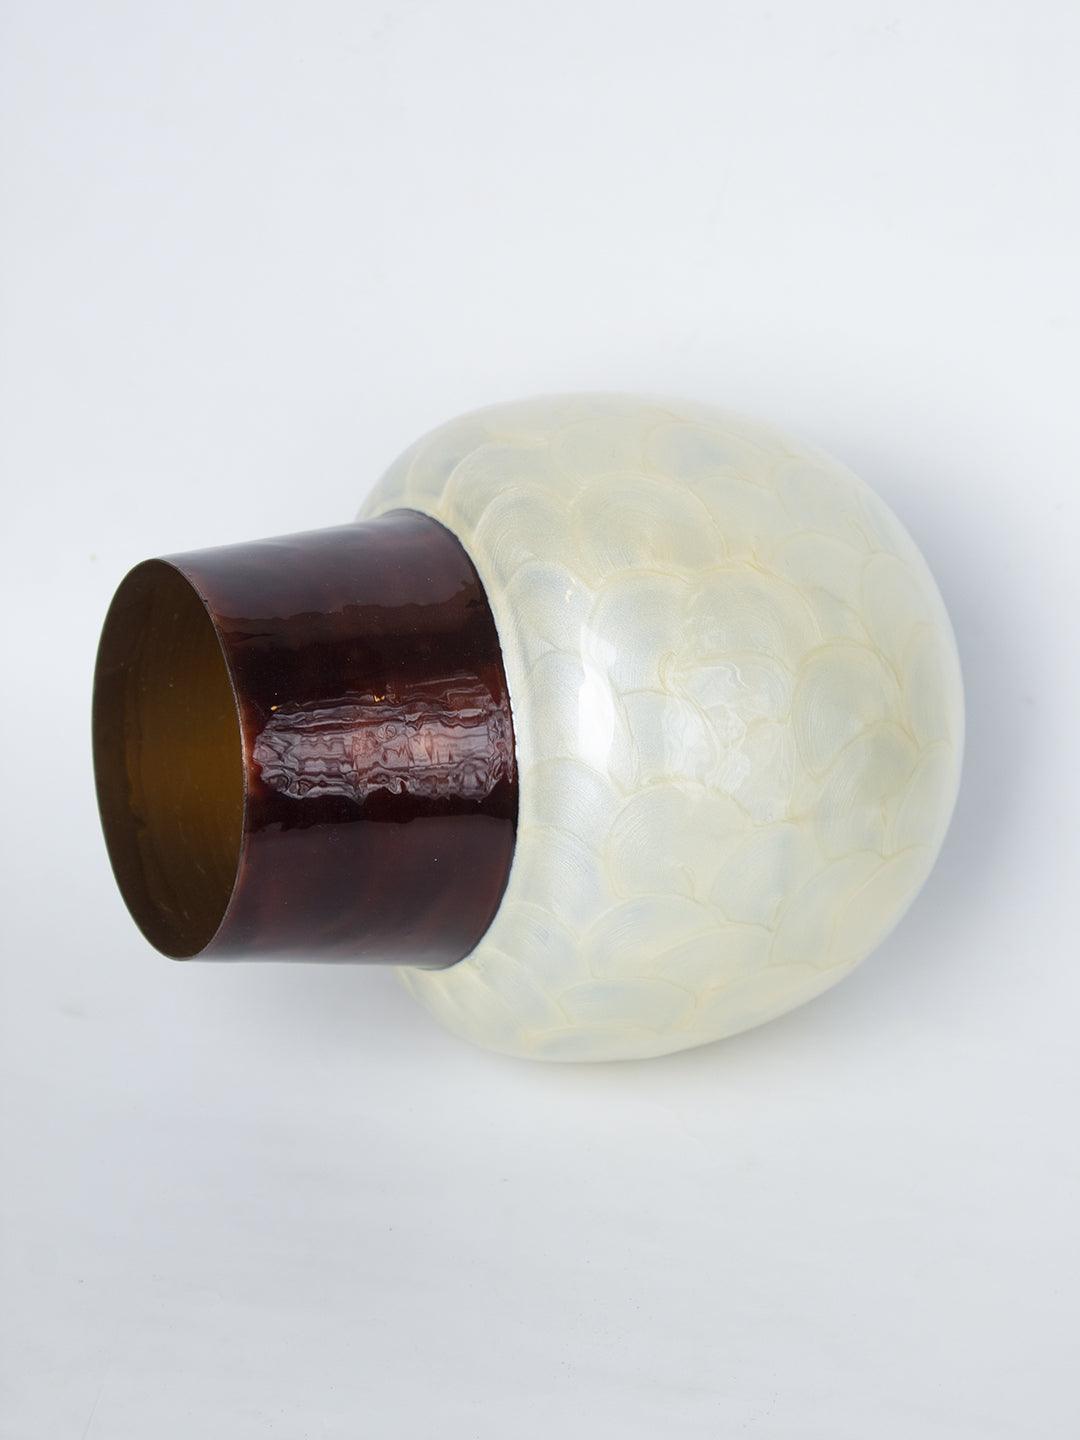 Ivory Globular Shape Pot Vase (Ivory Enamel) - 4